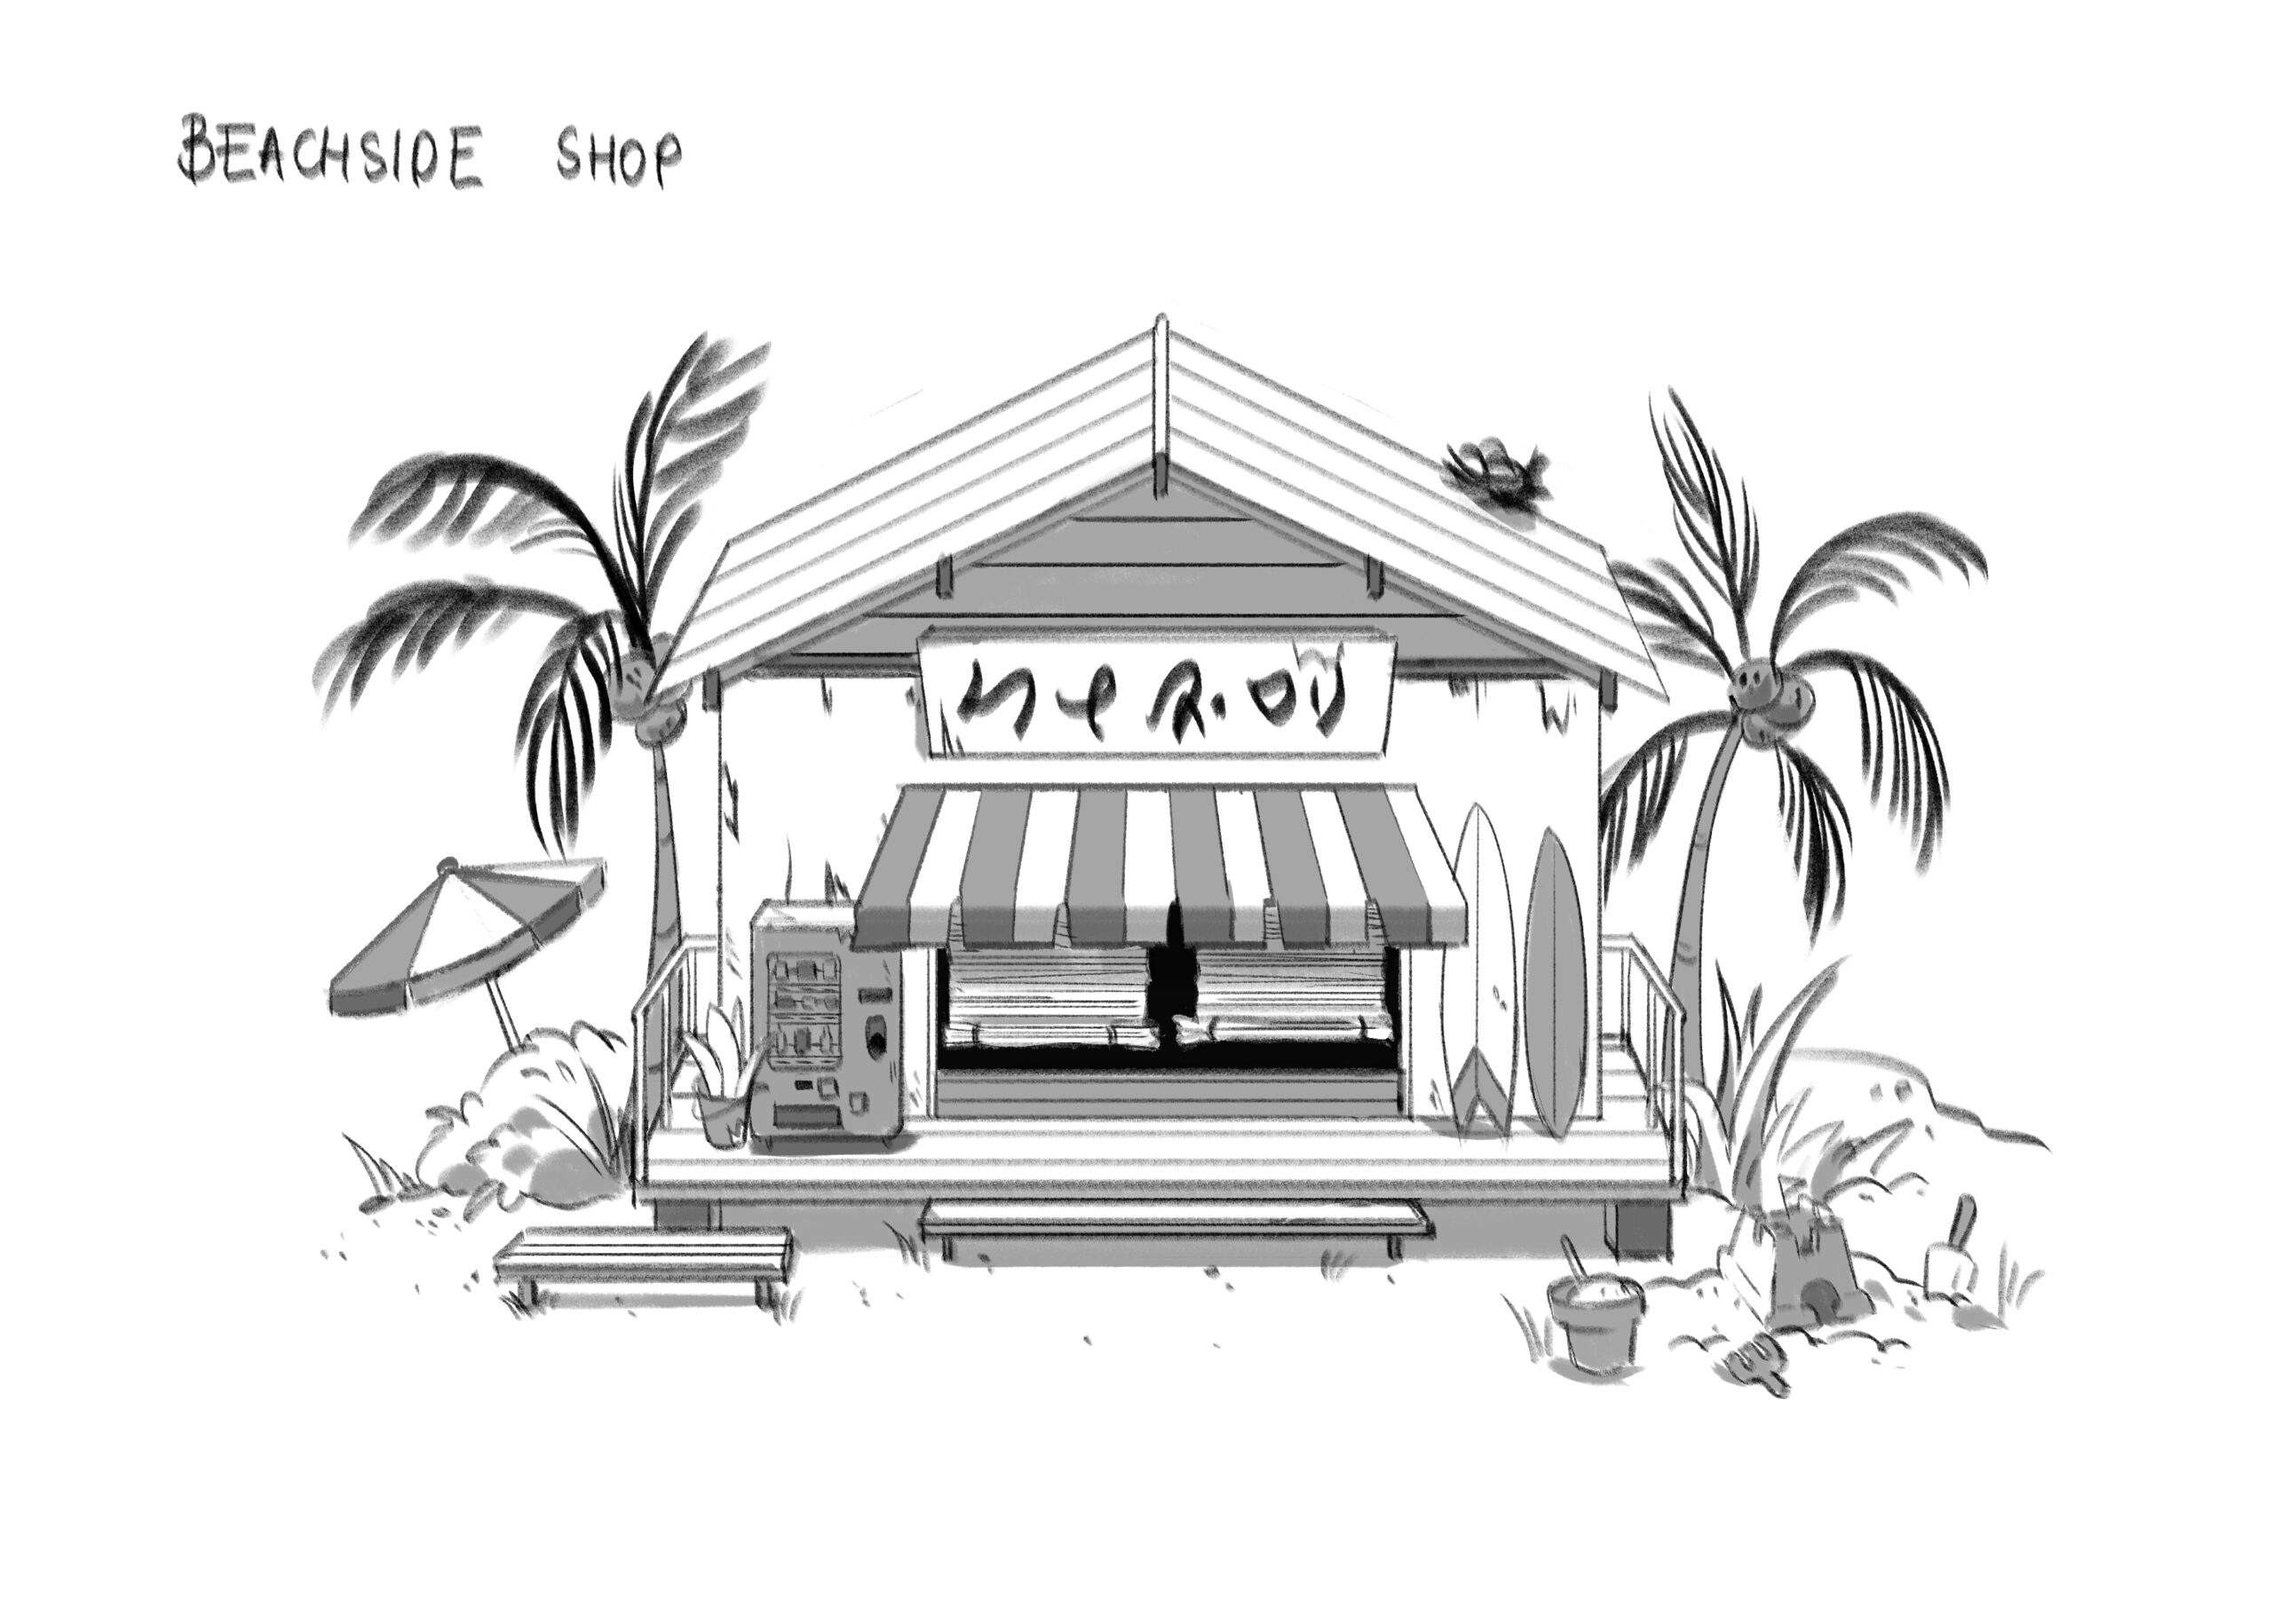 Concept Art of Beachside Shop